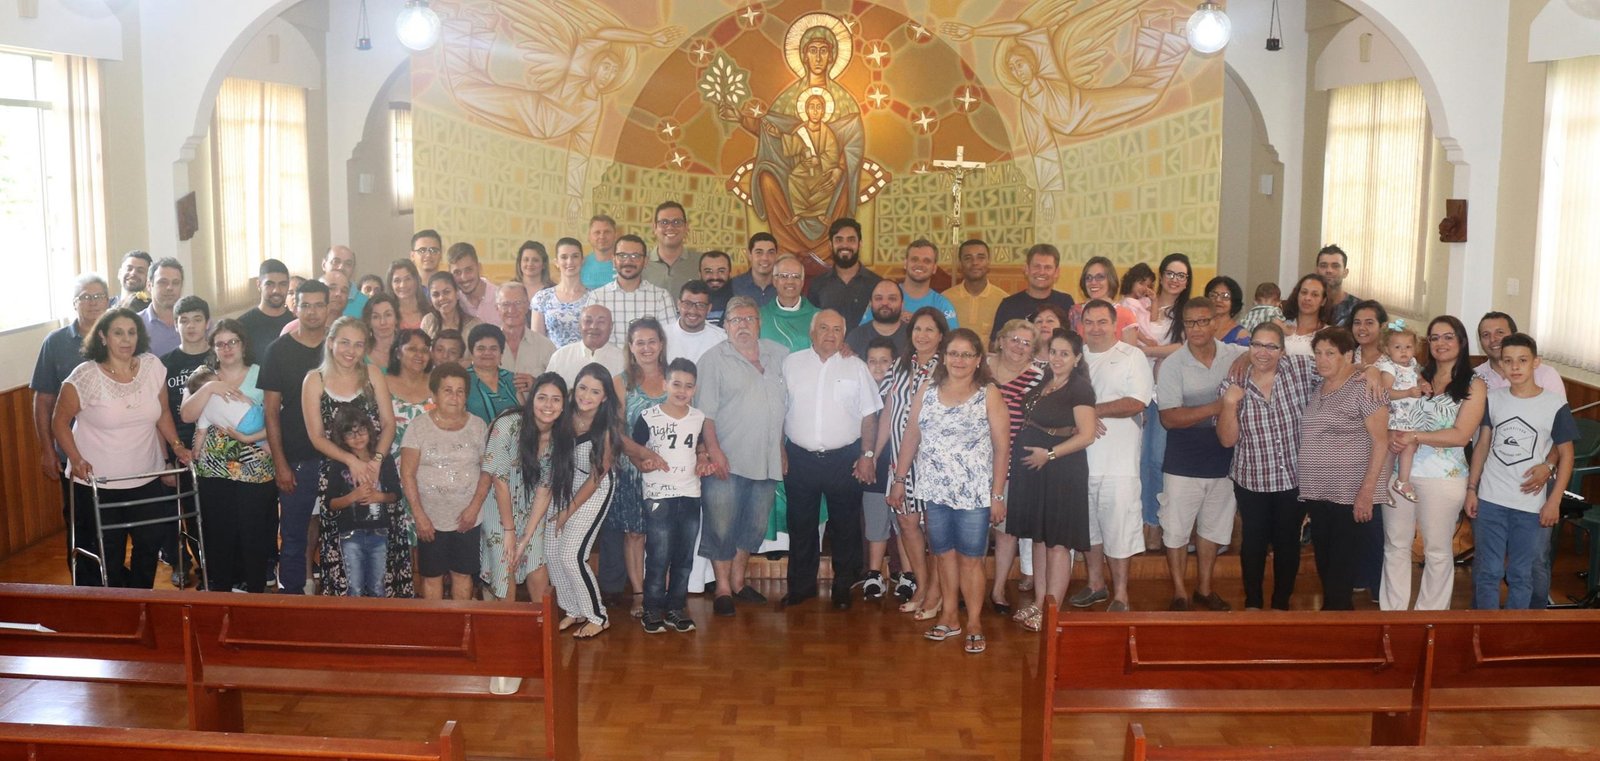 Encontro com as família encerra atividades do ano no Seminário Paulo VI